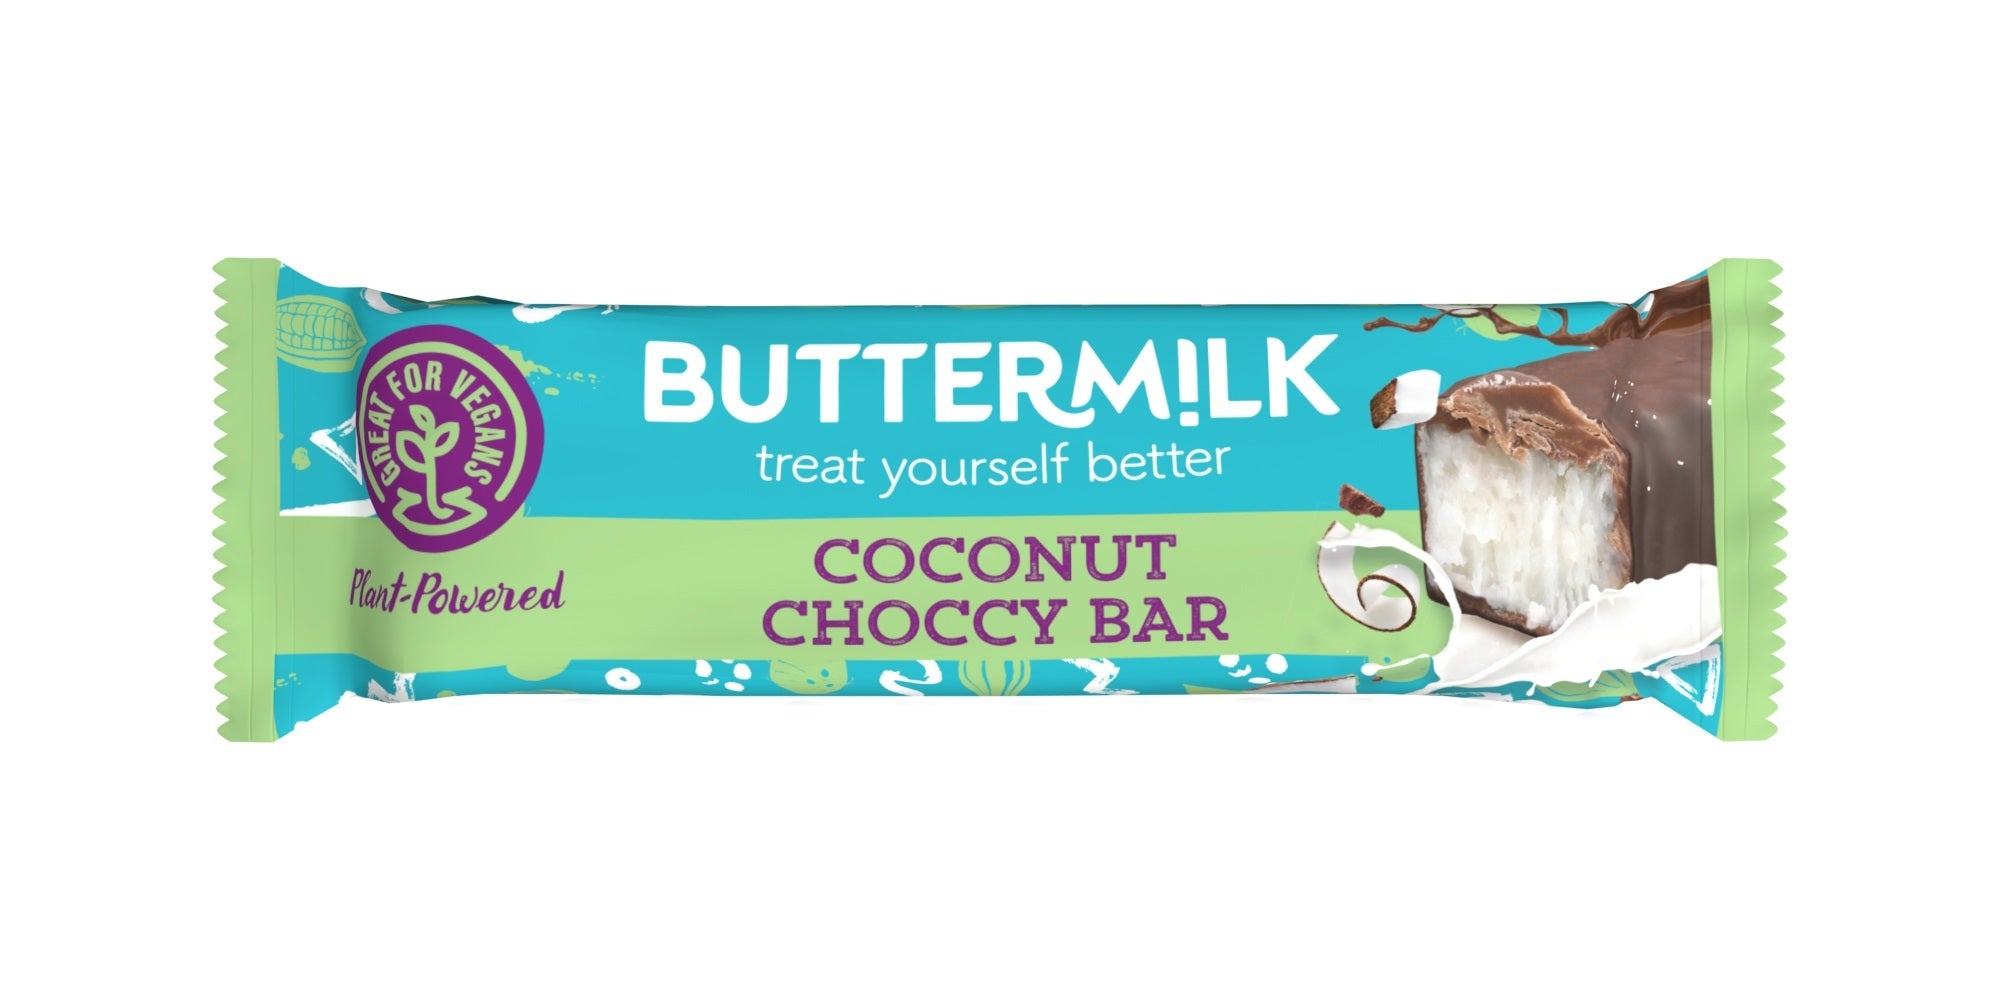 Buttermilk - Coconut Choccy Bar, 1.41oz